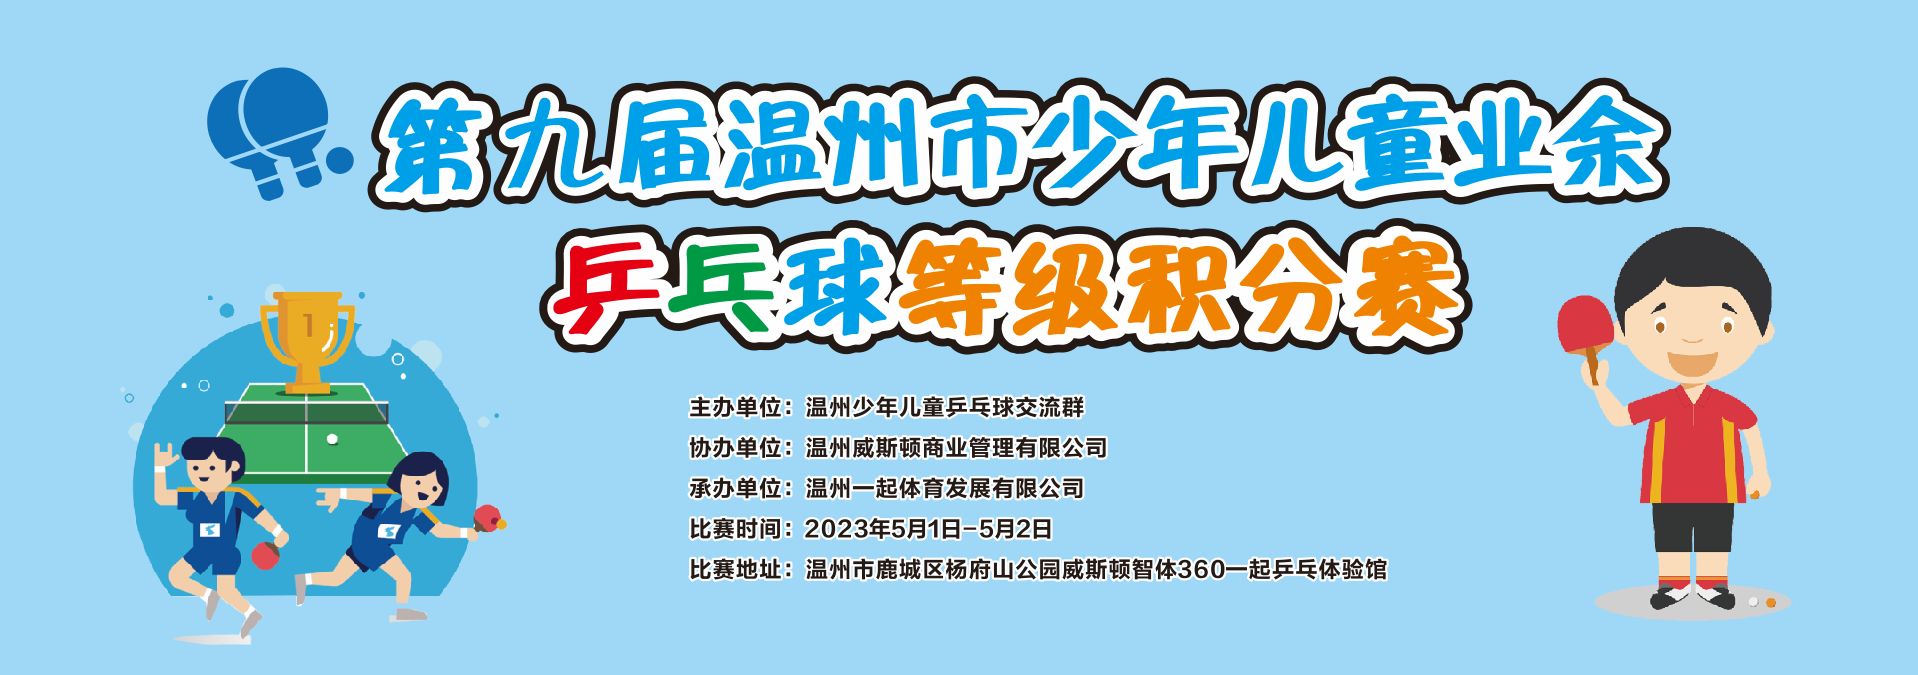 五一期间第九届温州市少年儿童业余乒乓球等级积分赛将在杨府山威斯顿智体360一起乒乓体验馆举行